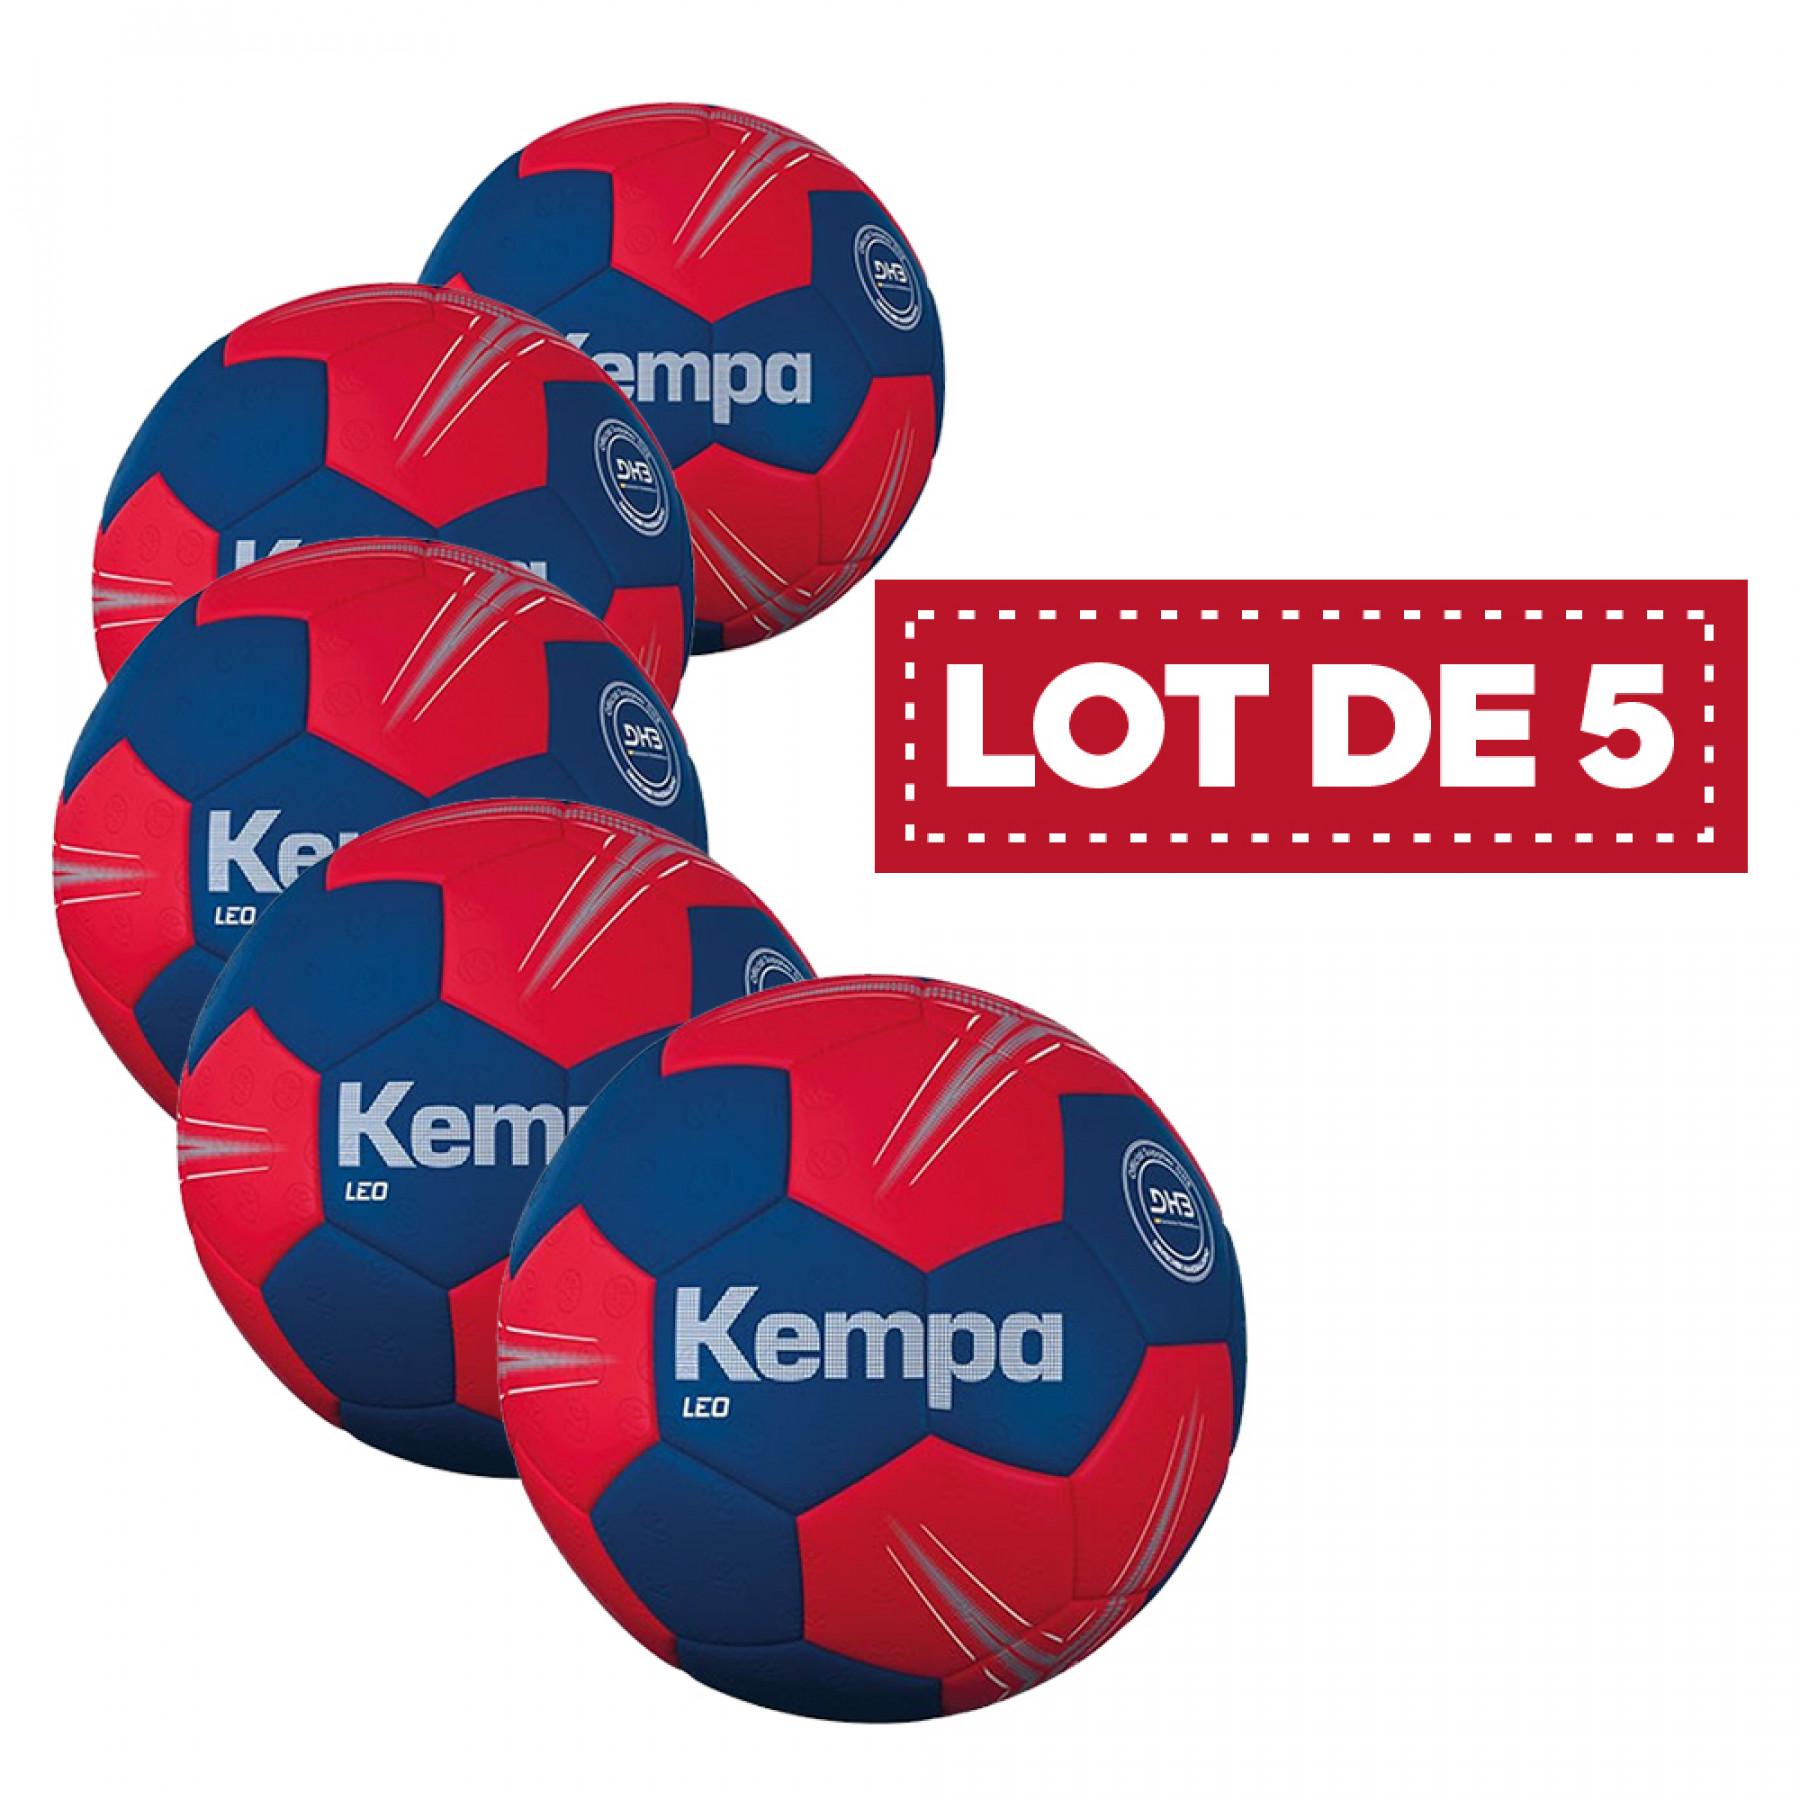 Lot de 5 ballons Leo Kempa